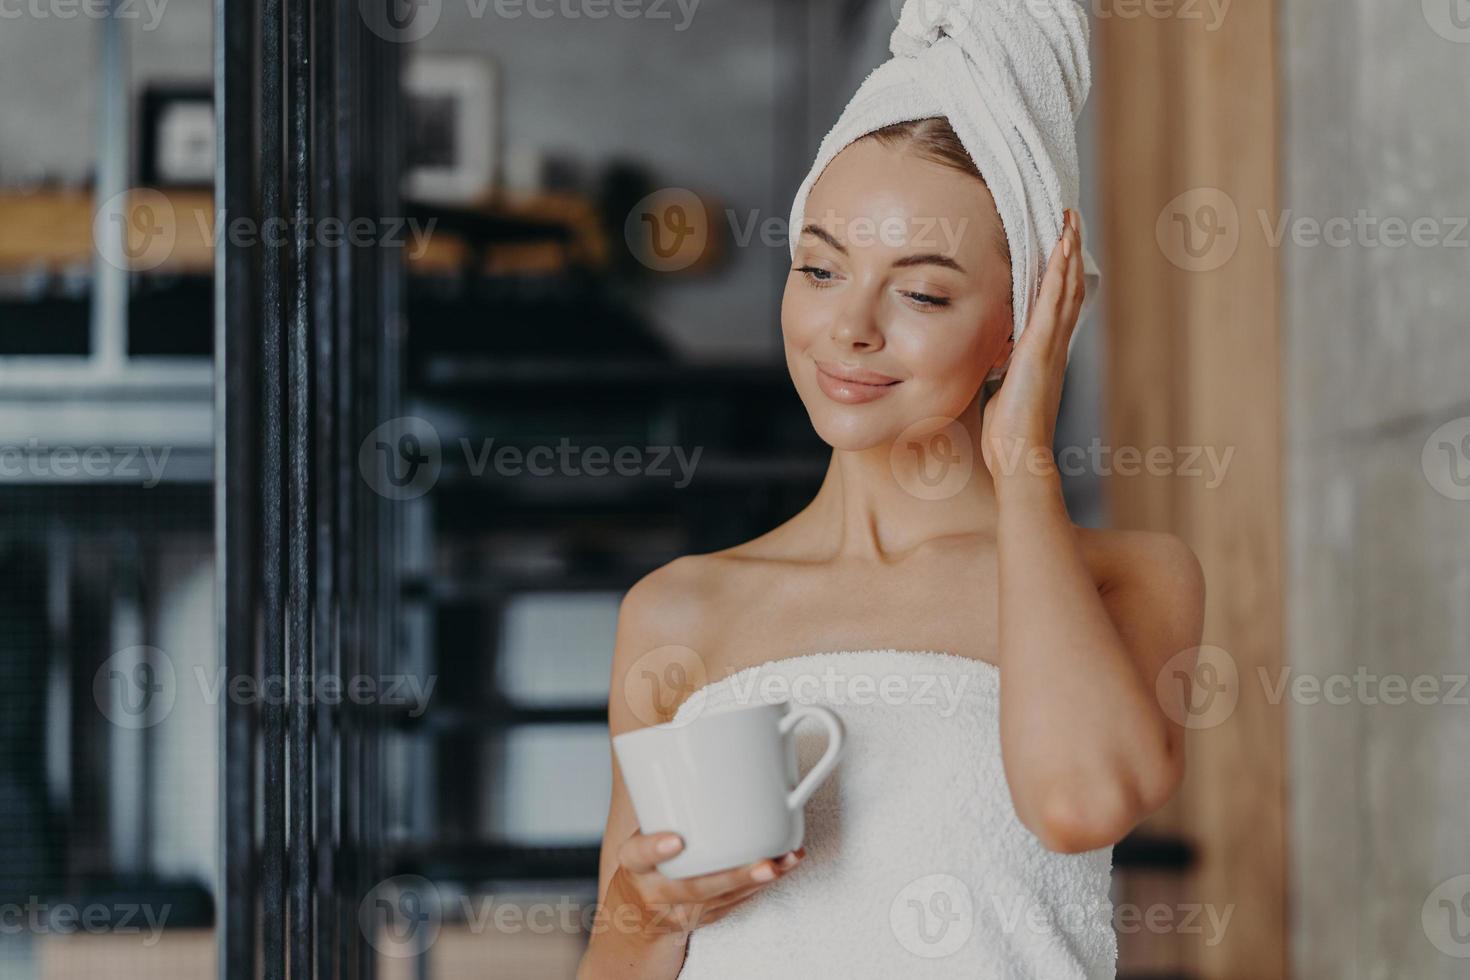 foto einer gesunden nachdenklichen frau mit gesunder glatter haut trinkt heißen tee konzentriert nach unten, steht in einem weißen badetuch in einem gemütlichen zimmer, genießt hygiene- und schönheitsbehandlungen, fühlt sich entspannt